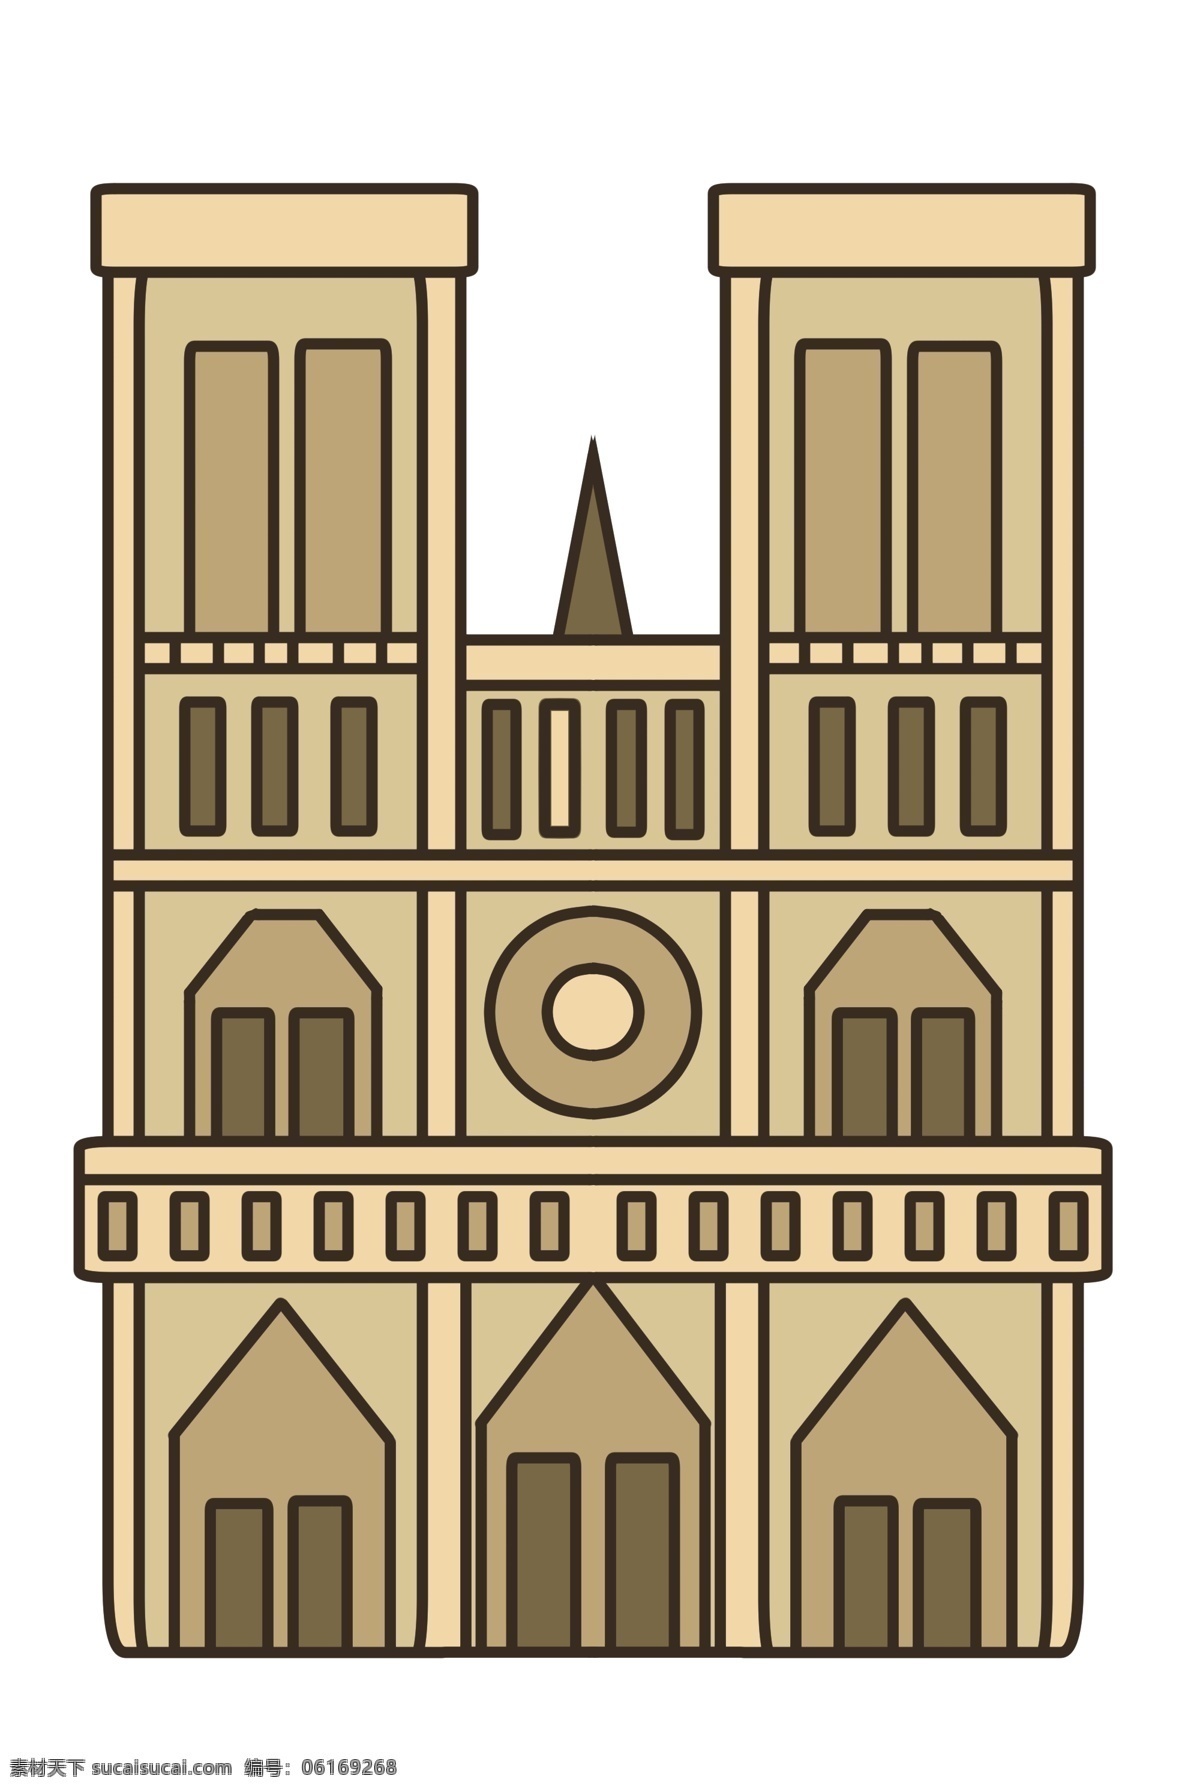 知名 建筑 巴黎圣母院 知名建筑 旅游景点